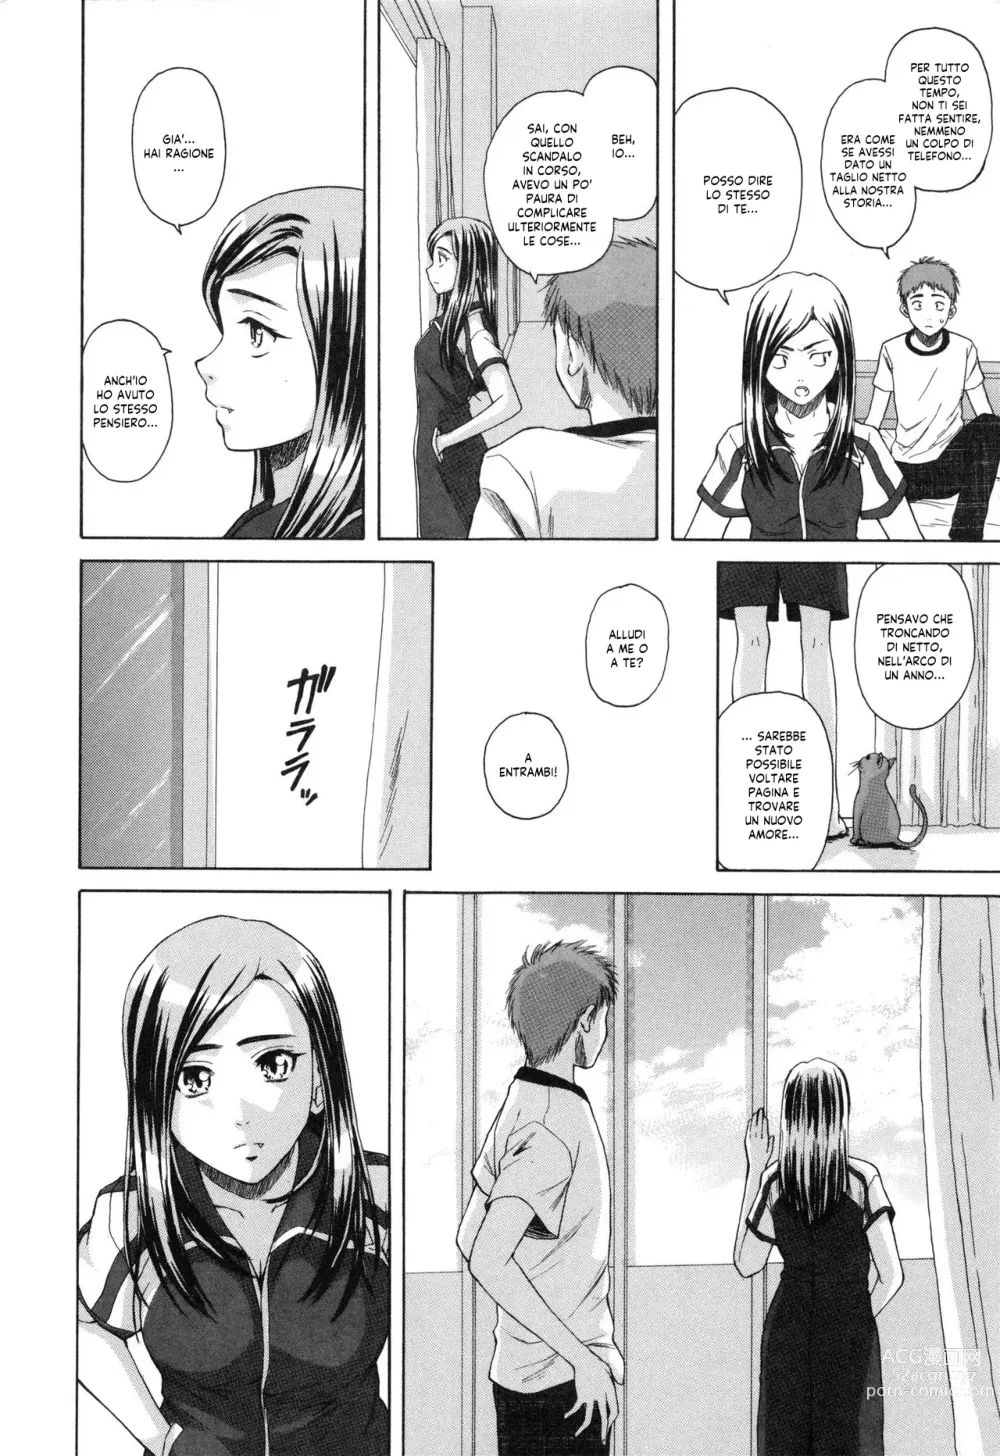 Page 251 of manga Uno Studente e la Sua Insegnante